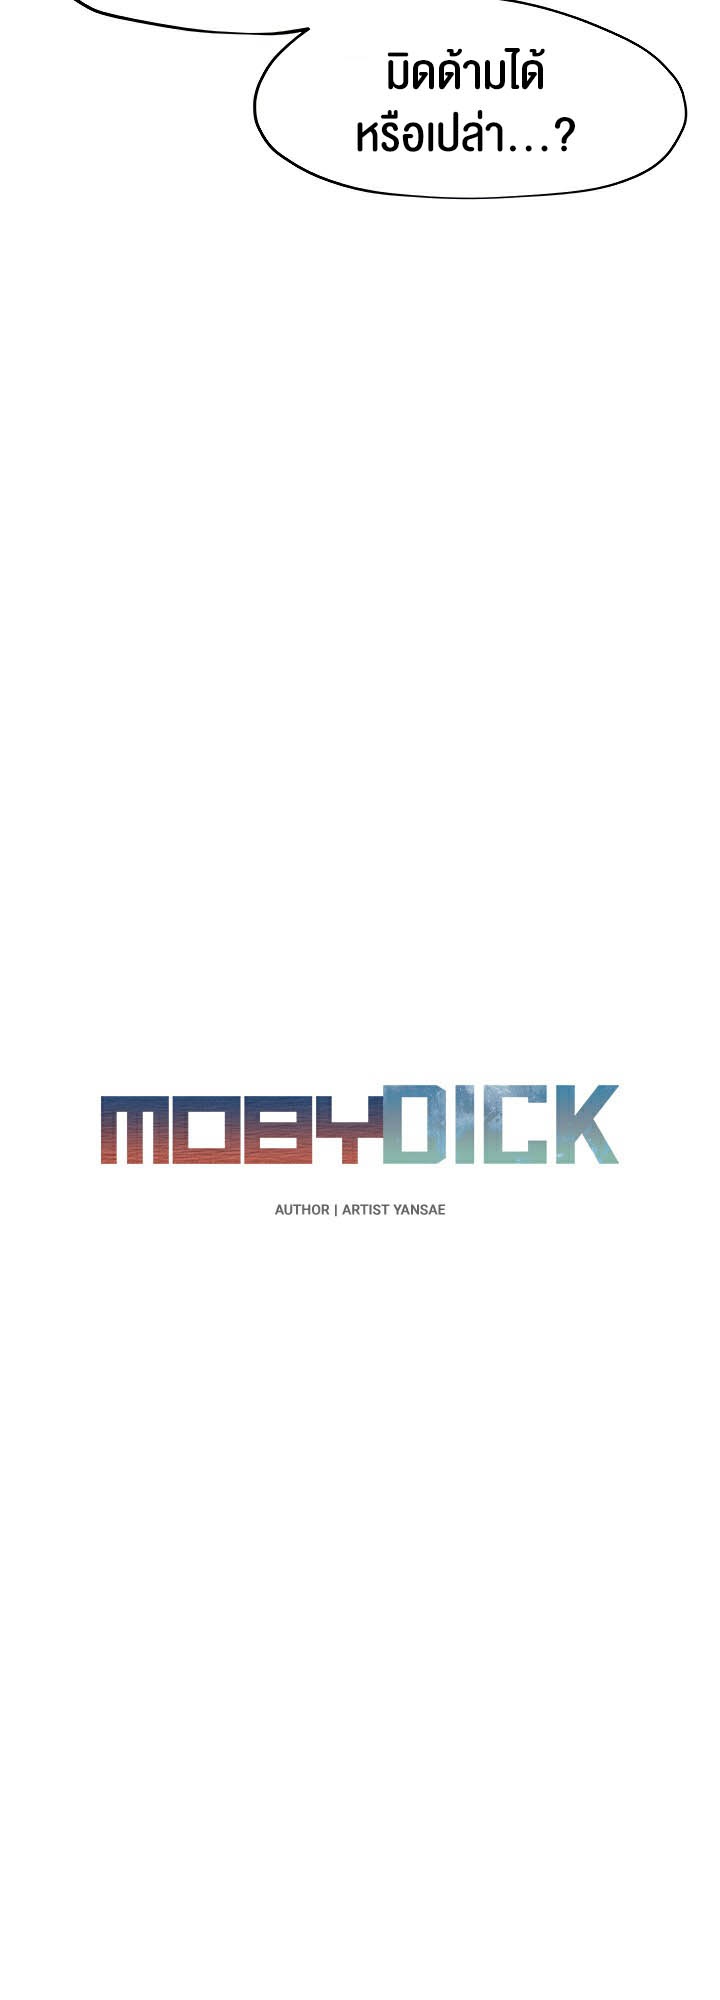 อ่านโดจิน เรื่อง Moby Dick โมบี้ดิ๊ก 26 (15)